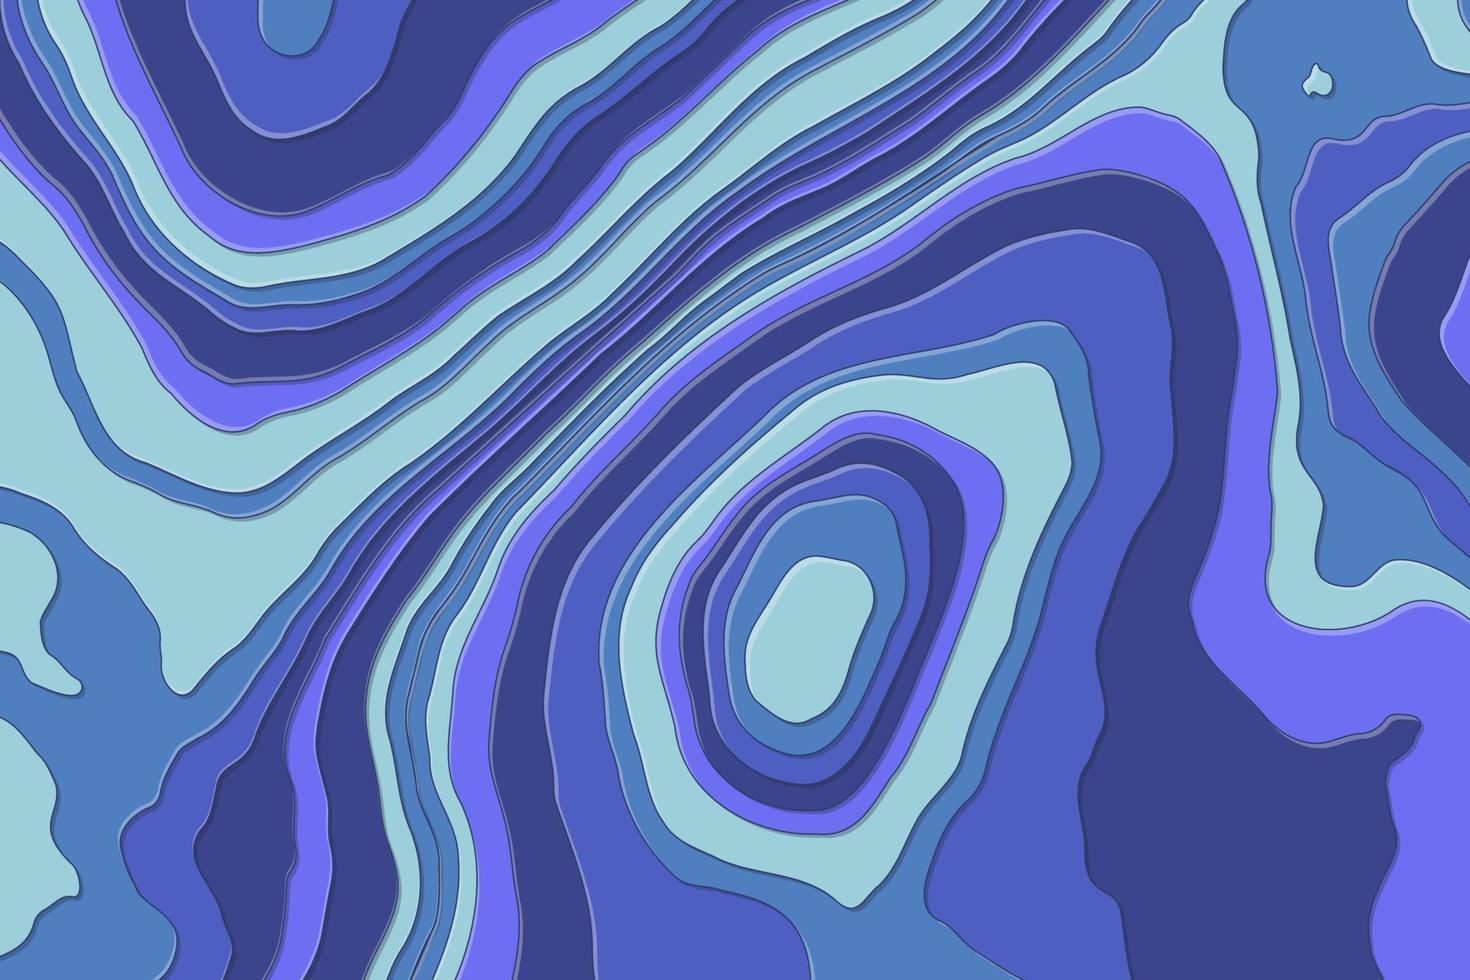 fond de vecteur de carte topographique découpé en papier violet, bleu. illustration d'art de lignes géométriques abstraites